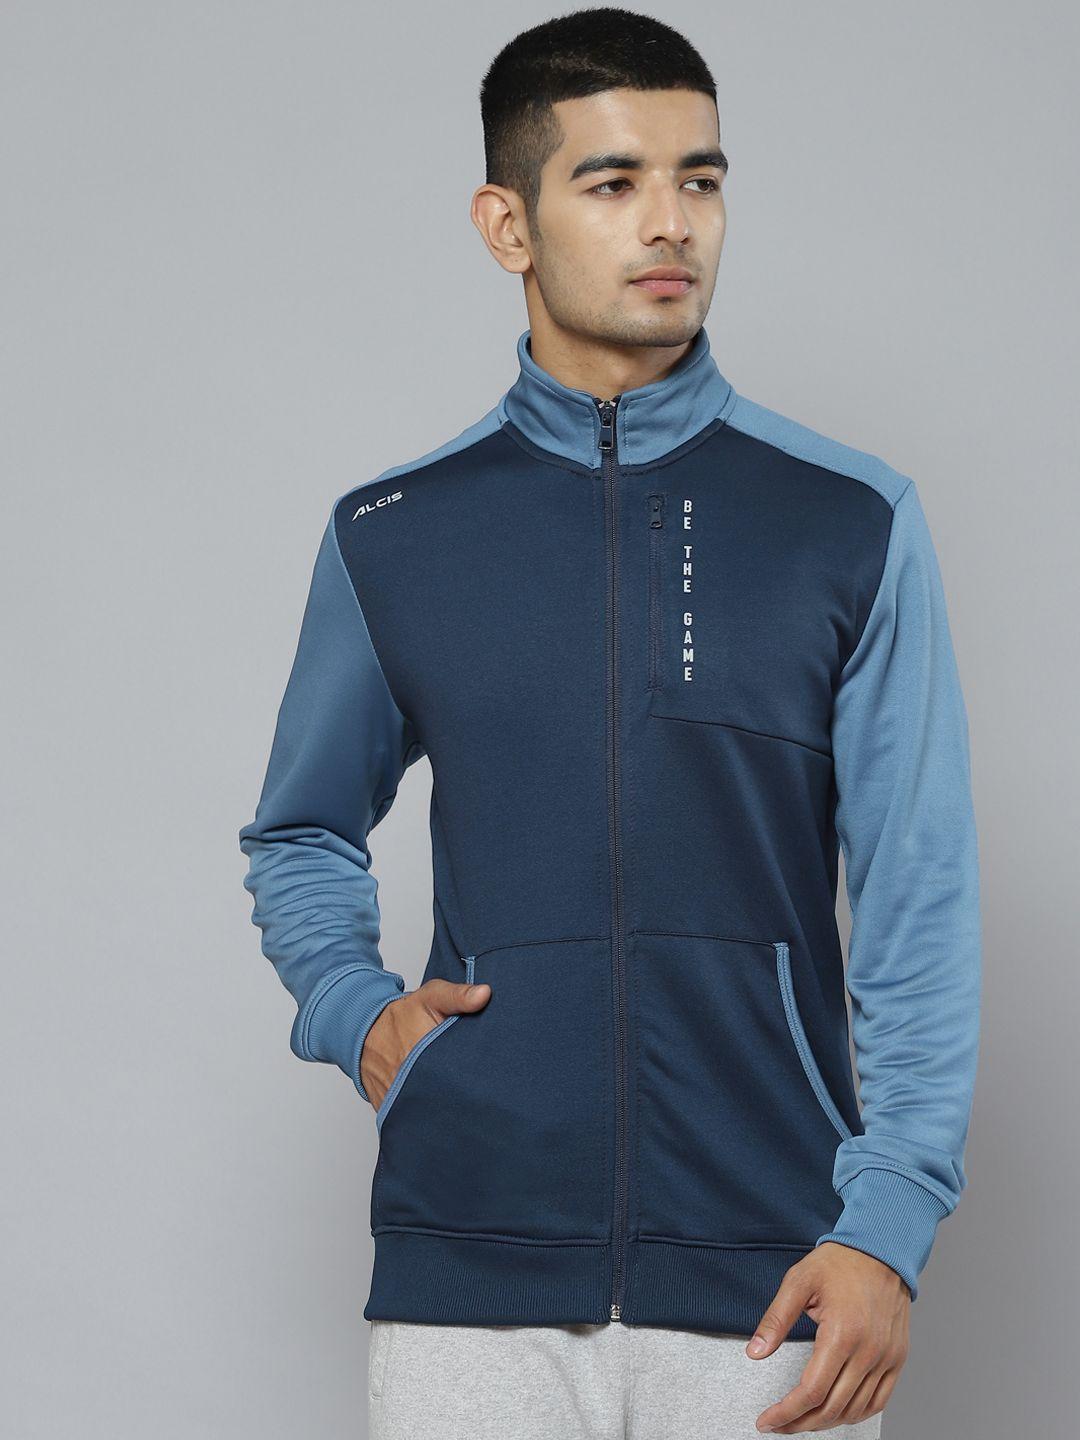 alcis men colourblocked running sporty jacket